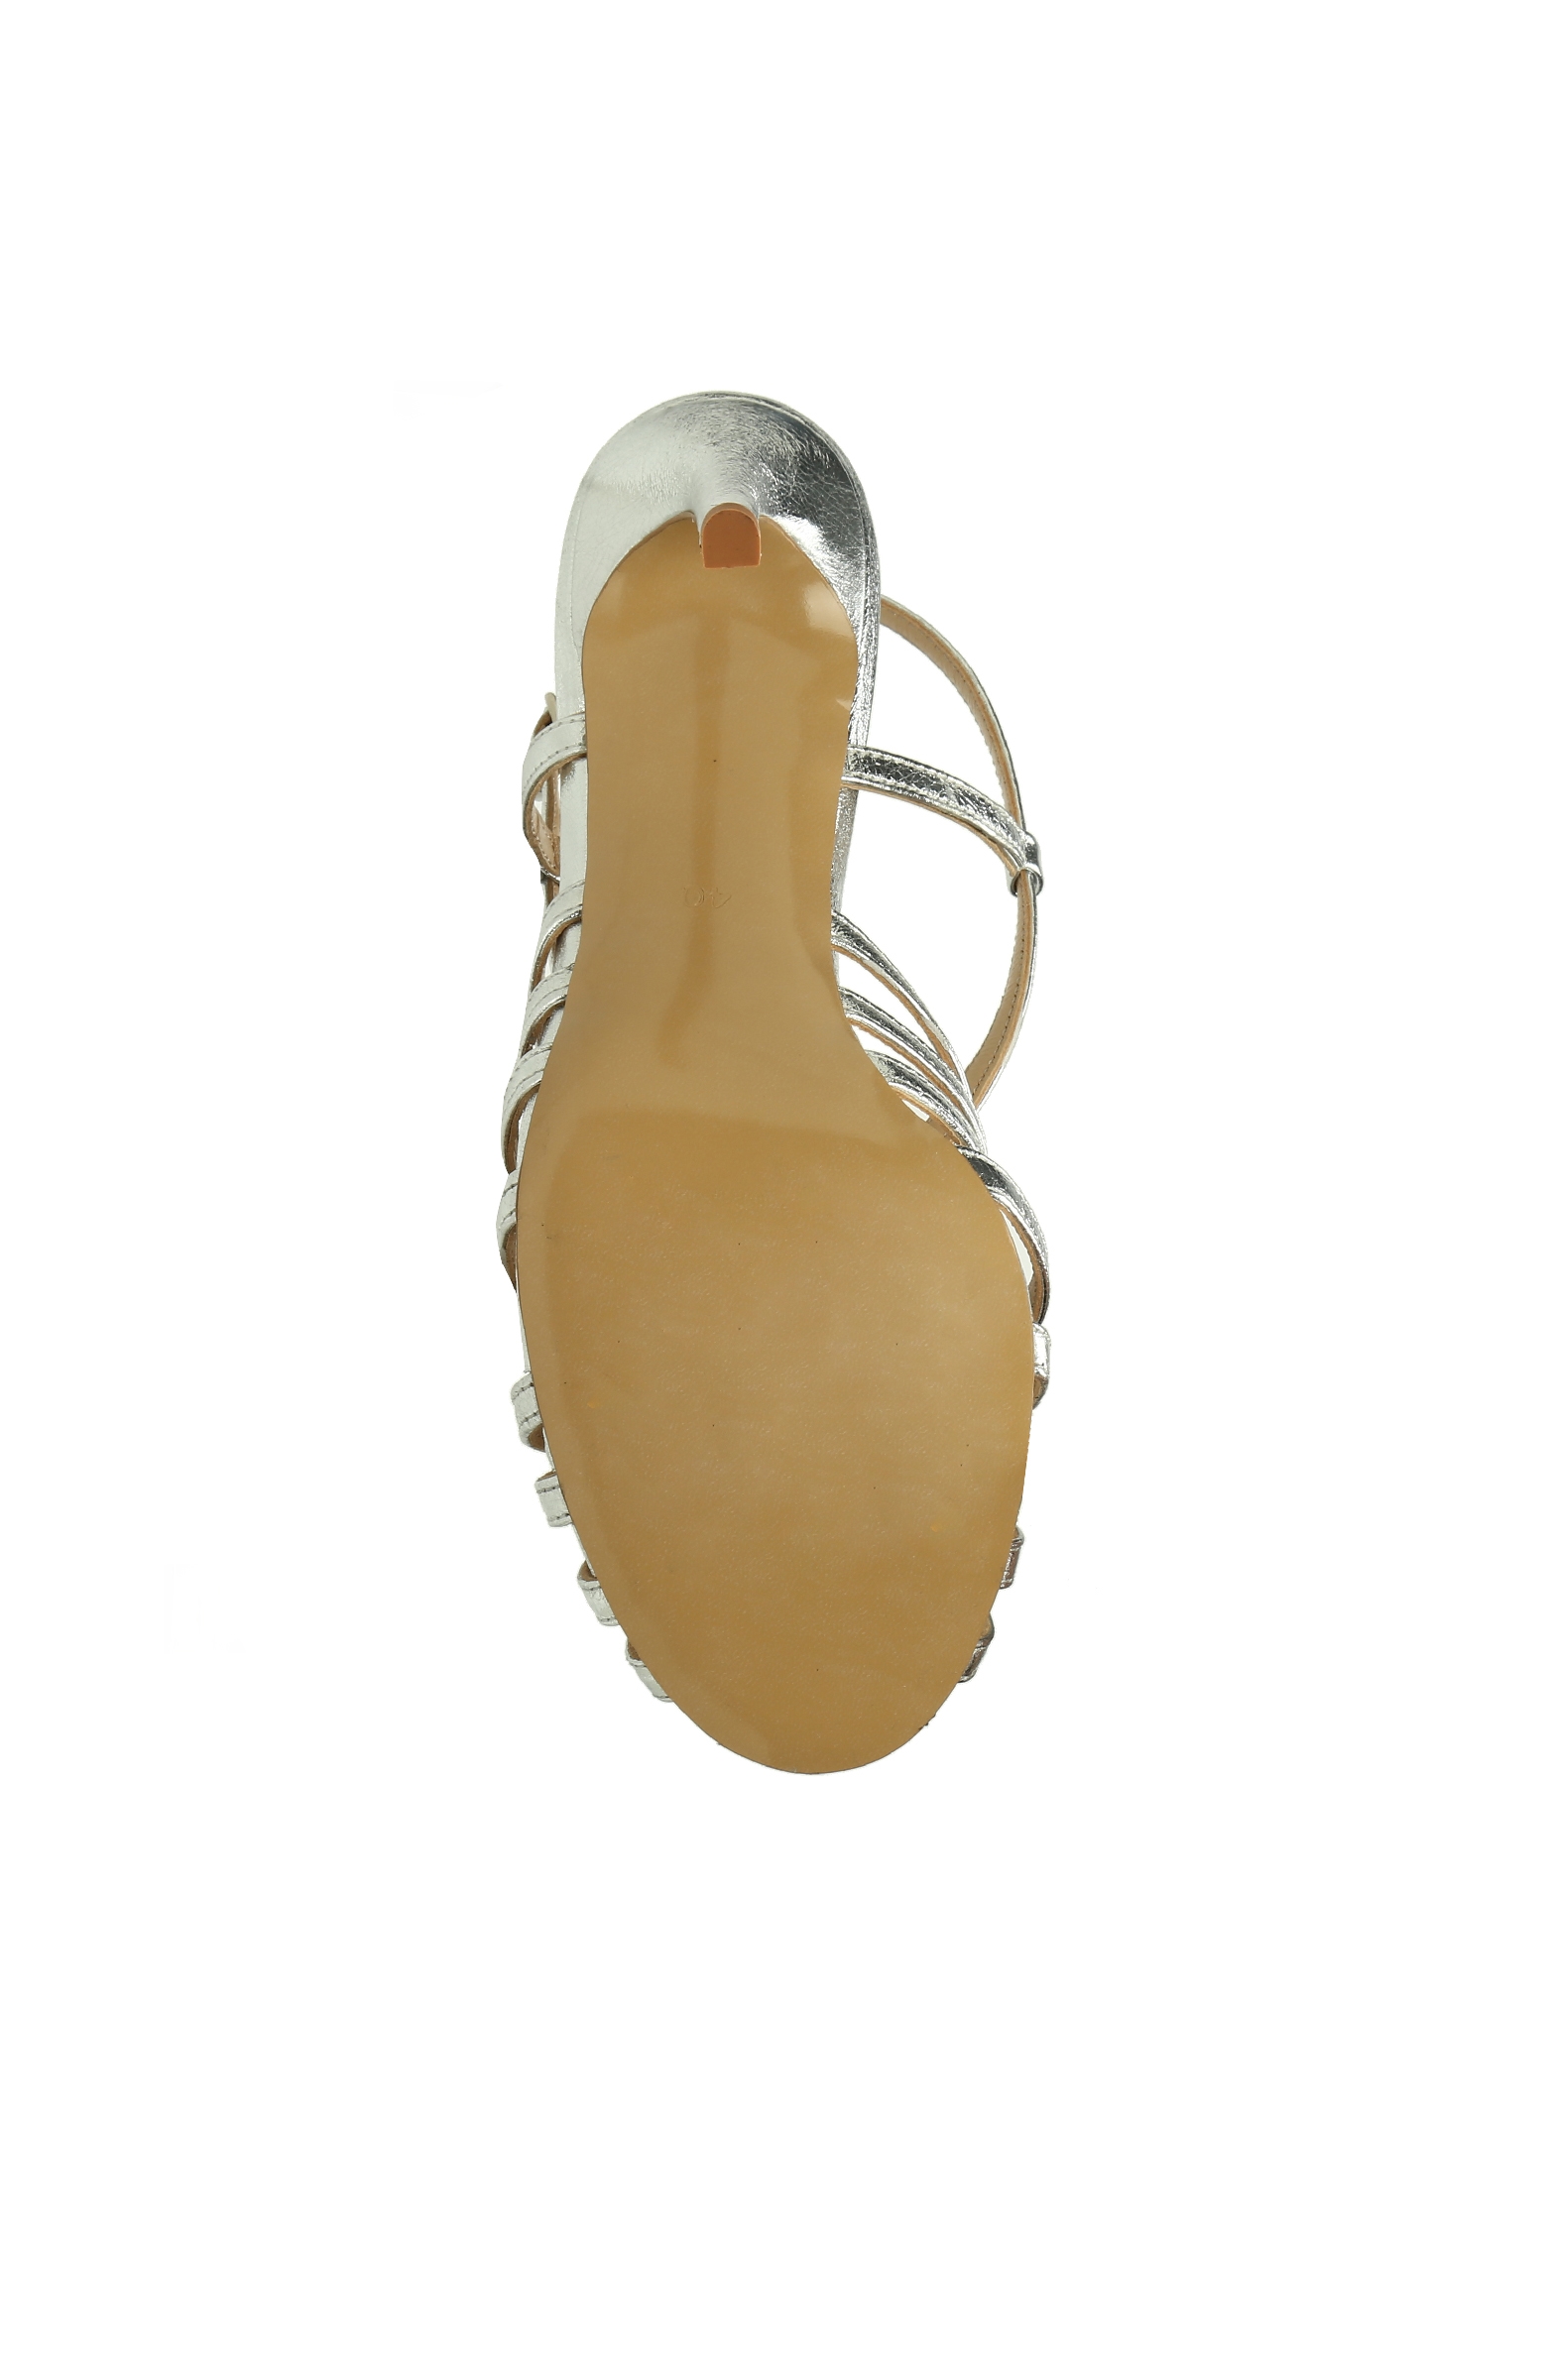 Silver Çapraz Bantlı Topuklu Kadın Ayakkabı